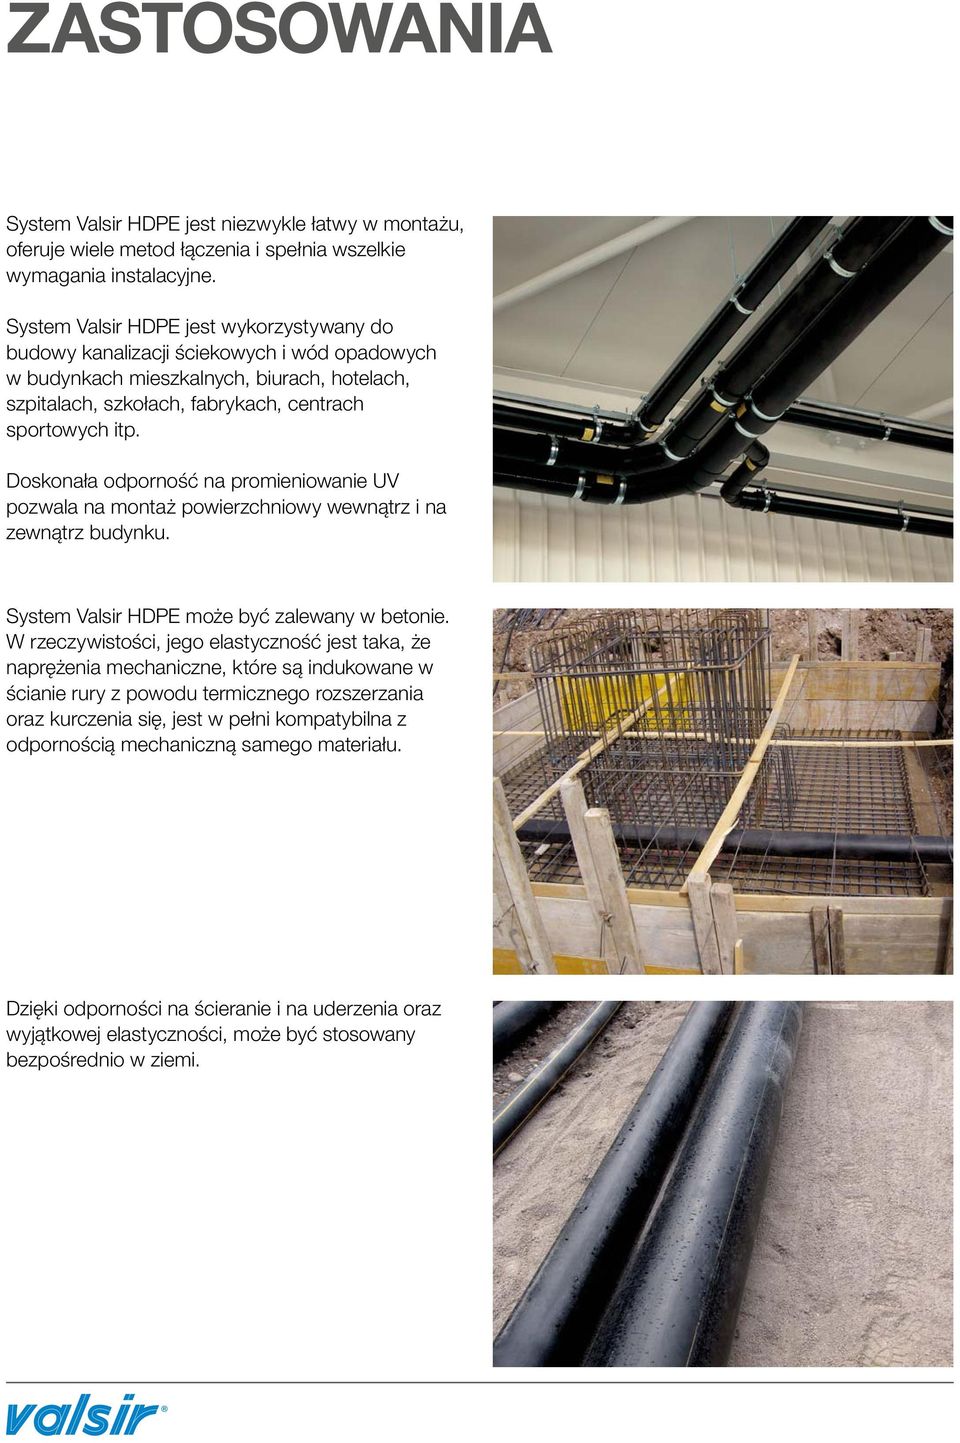 Doskonała odporność na promieniowanie UV pozwala na montaż powierzchniowy wewnątrz i na zewnątrz budynku. System Valsir HDPE może być zalewany w betonie.